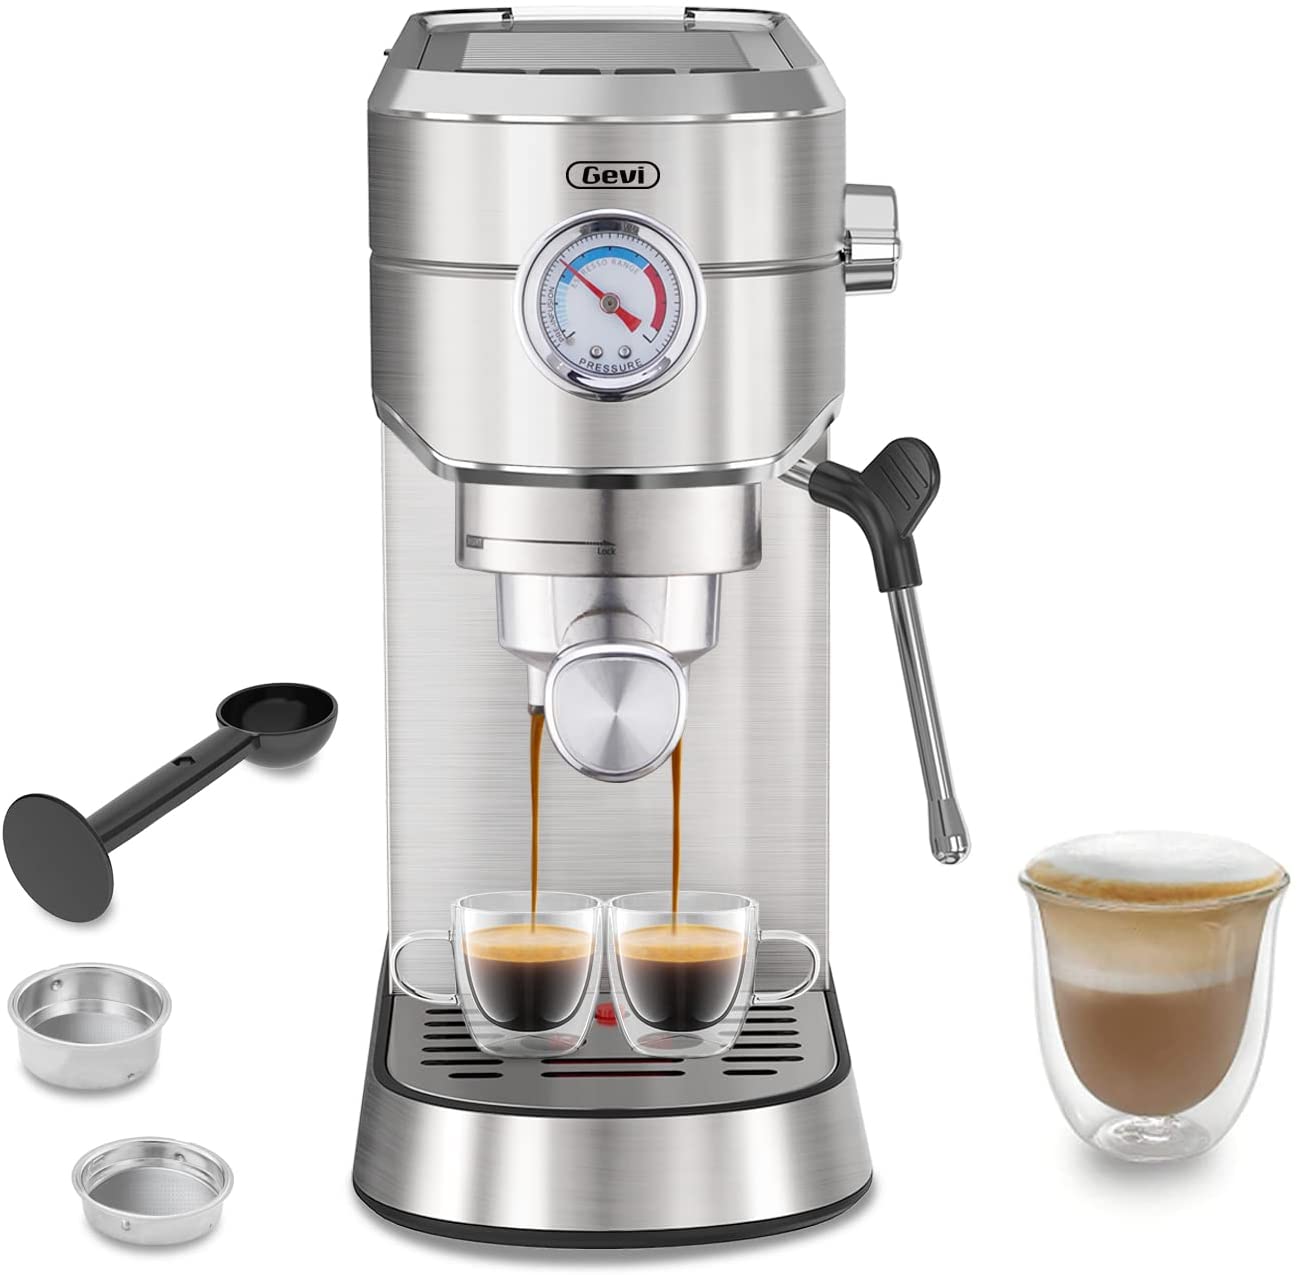 Breville Espresso Machine mejor calificada - 23 - octubre 21, 2022